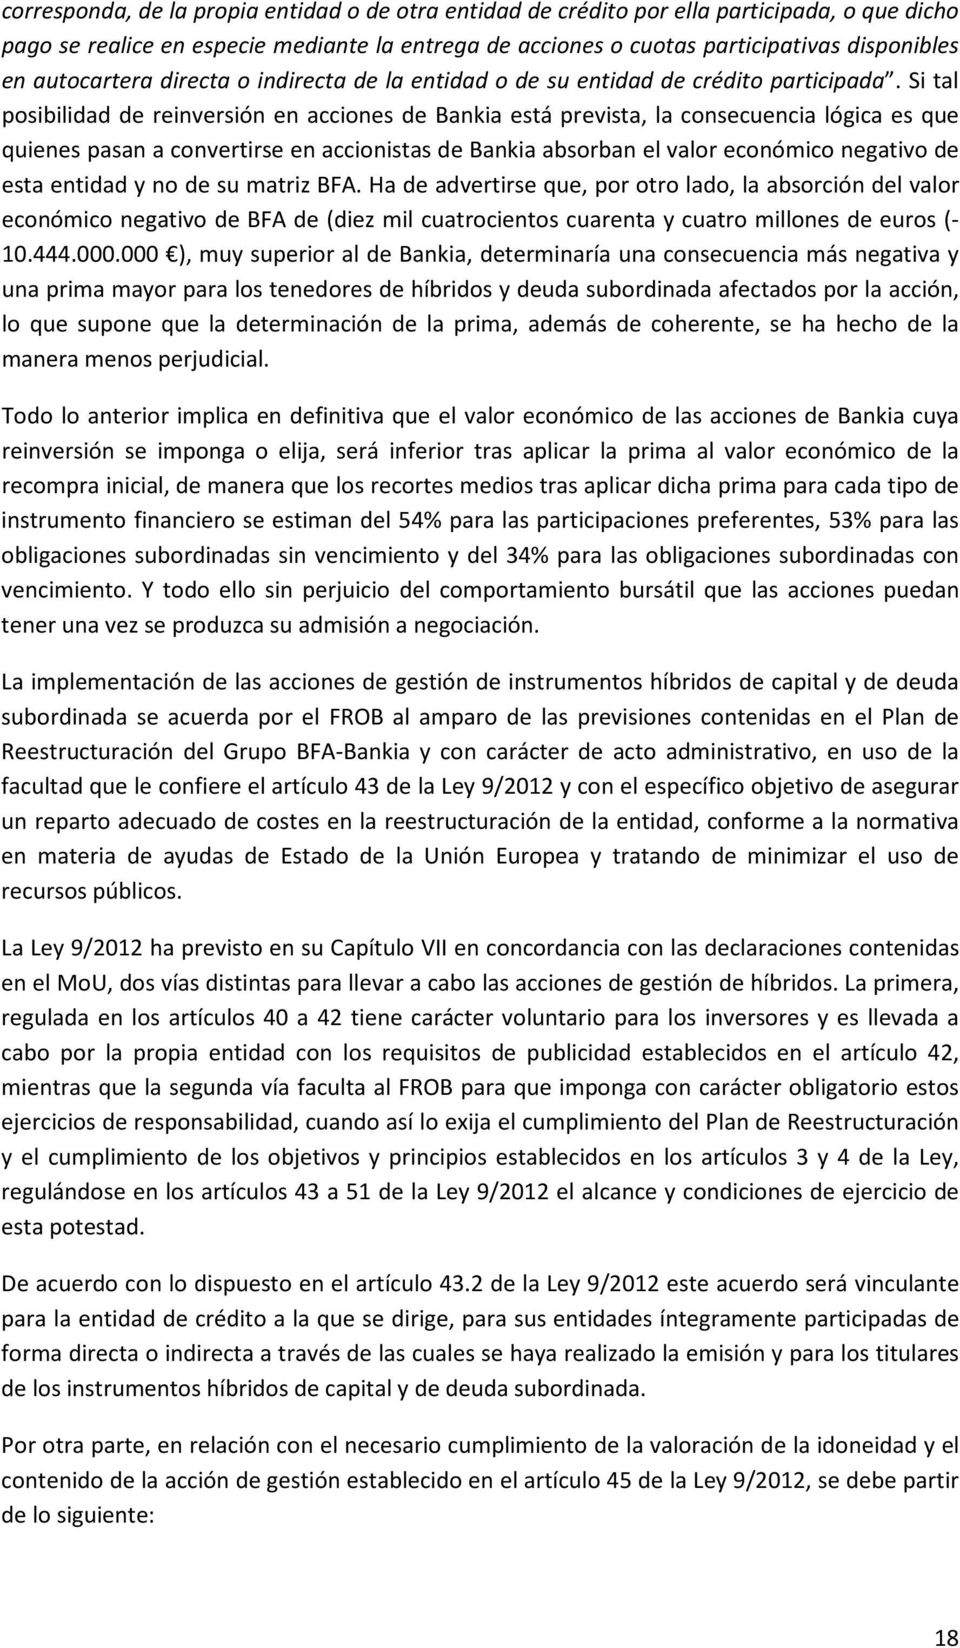 Si tal posibilidad de reinversión en acciones de Bankia está prevista, la consecuencia lógica es que quienes pasan a convertirse en accionistas de Bankia absorban el valor económico negativo de esta